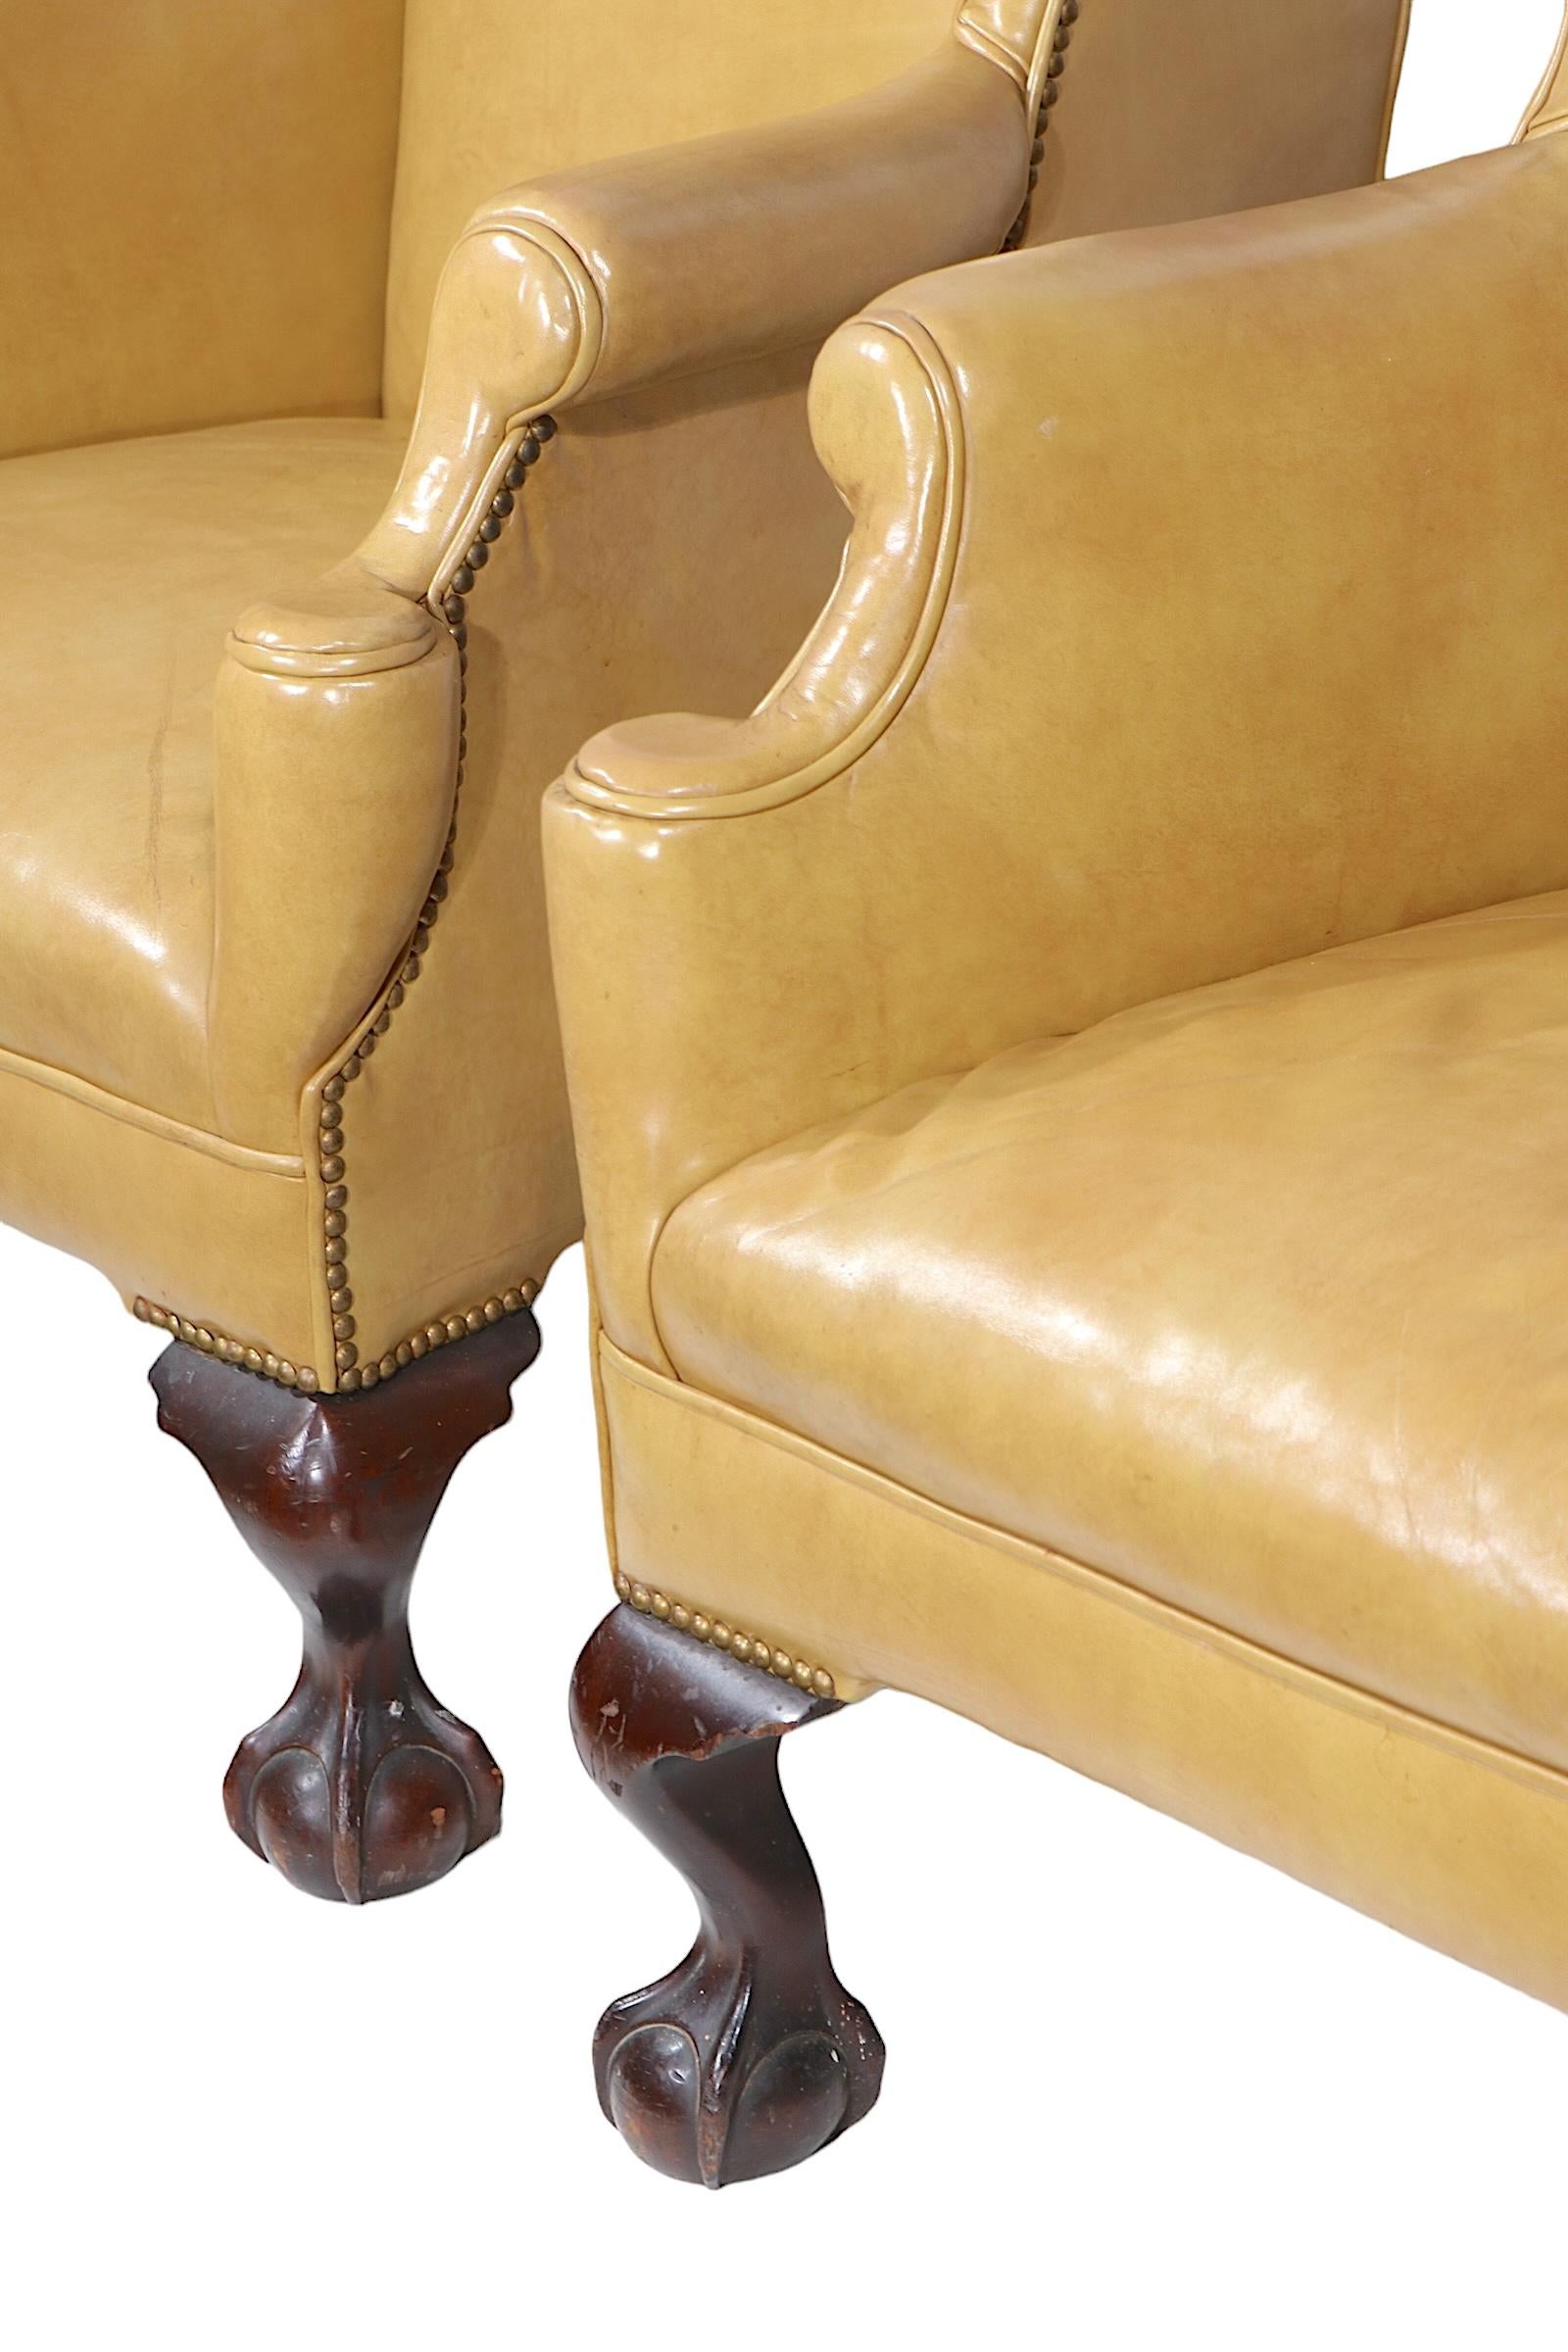 Exceptionnelle paire de chaises à dossier en forme d'aile, provenant de l'hôtel historique Fort William Henry, à Lake George (New York). Les chaises sont recouvertes de cuir, ornées de clous décoratifs et dotées de pieds en forme de boule et de